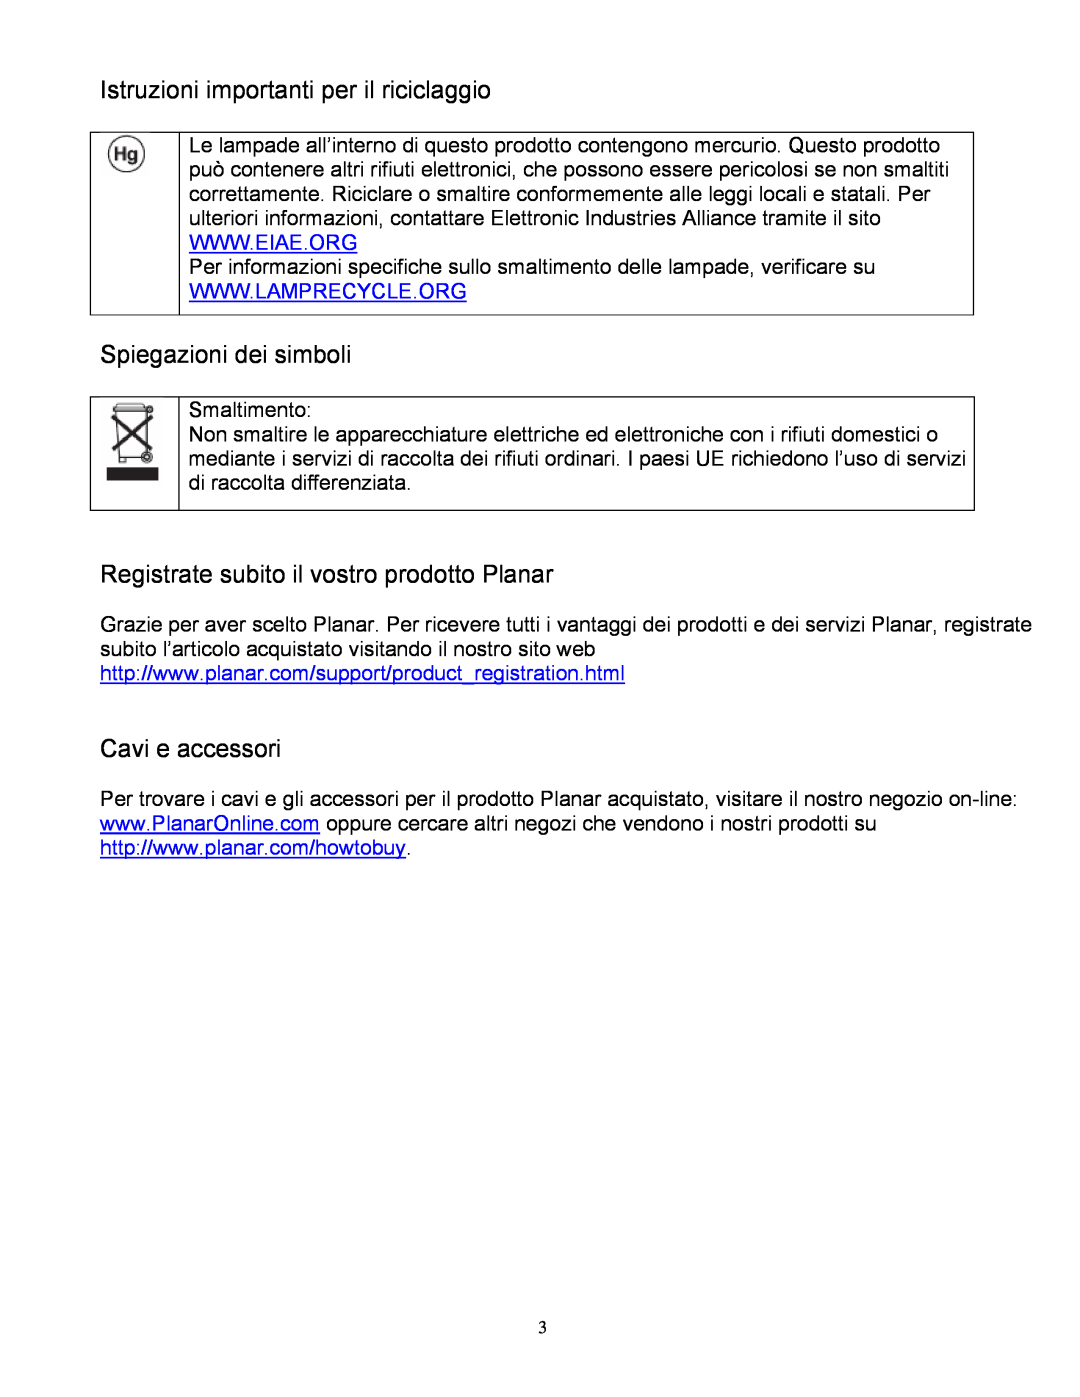 Planar PD370, PD520, PD420, PD470 manual Istruzioni importanti per il riciclaggio, Spiegazioni dei simboli, Cavi e accessori 